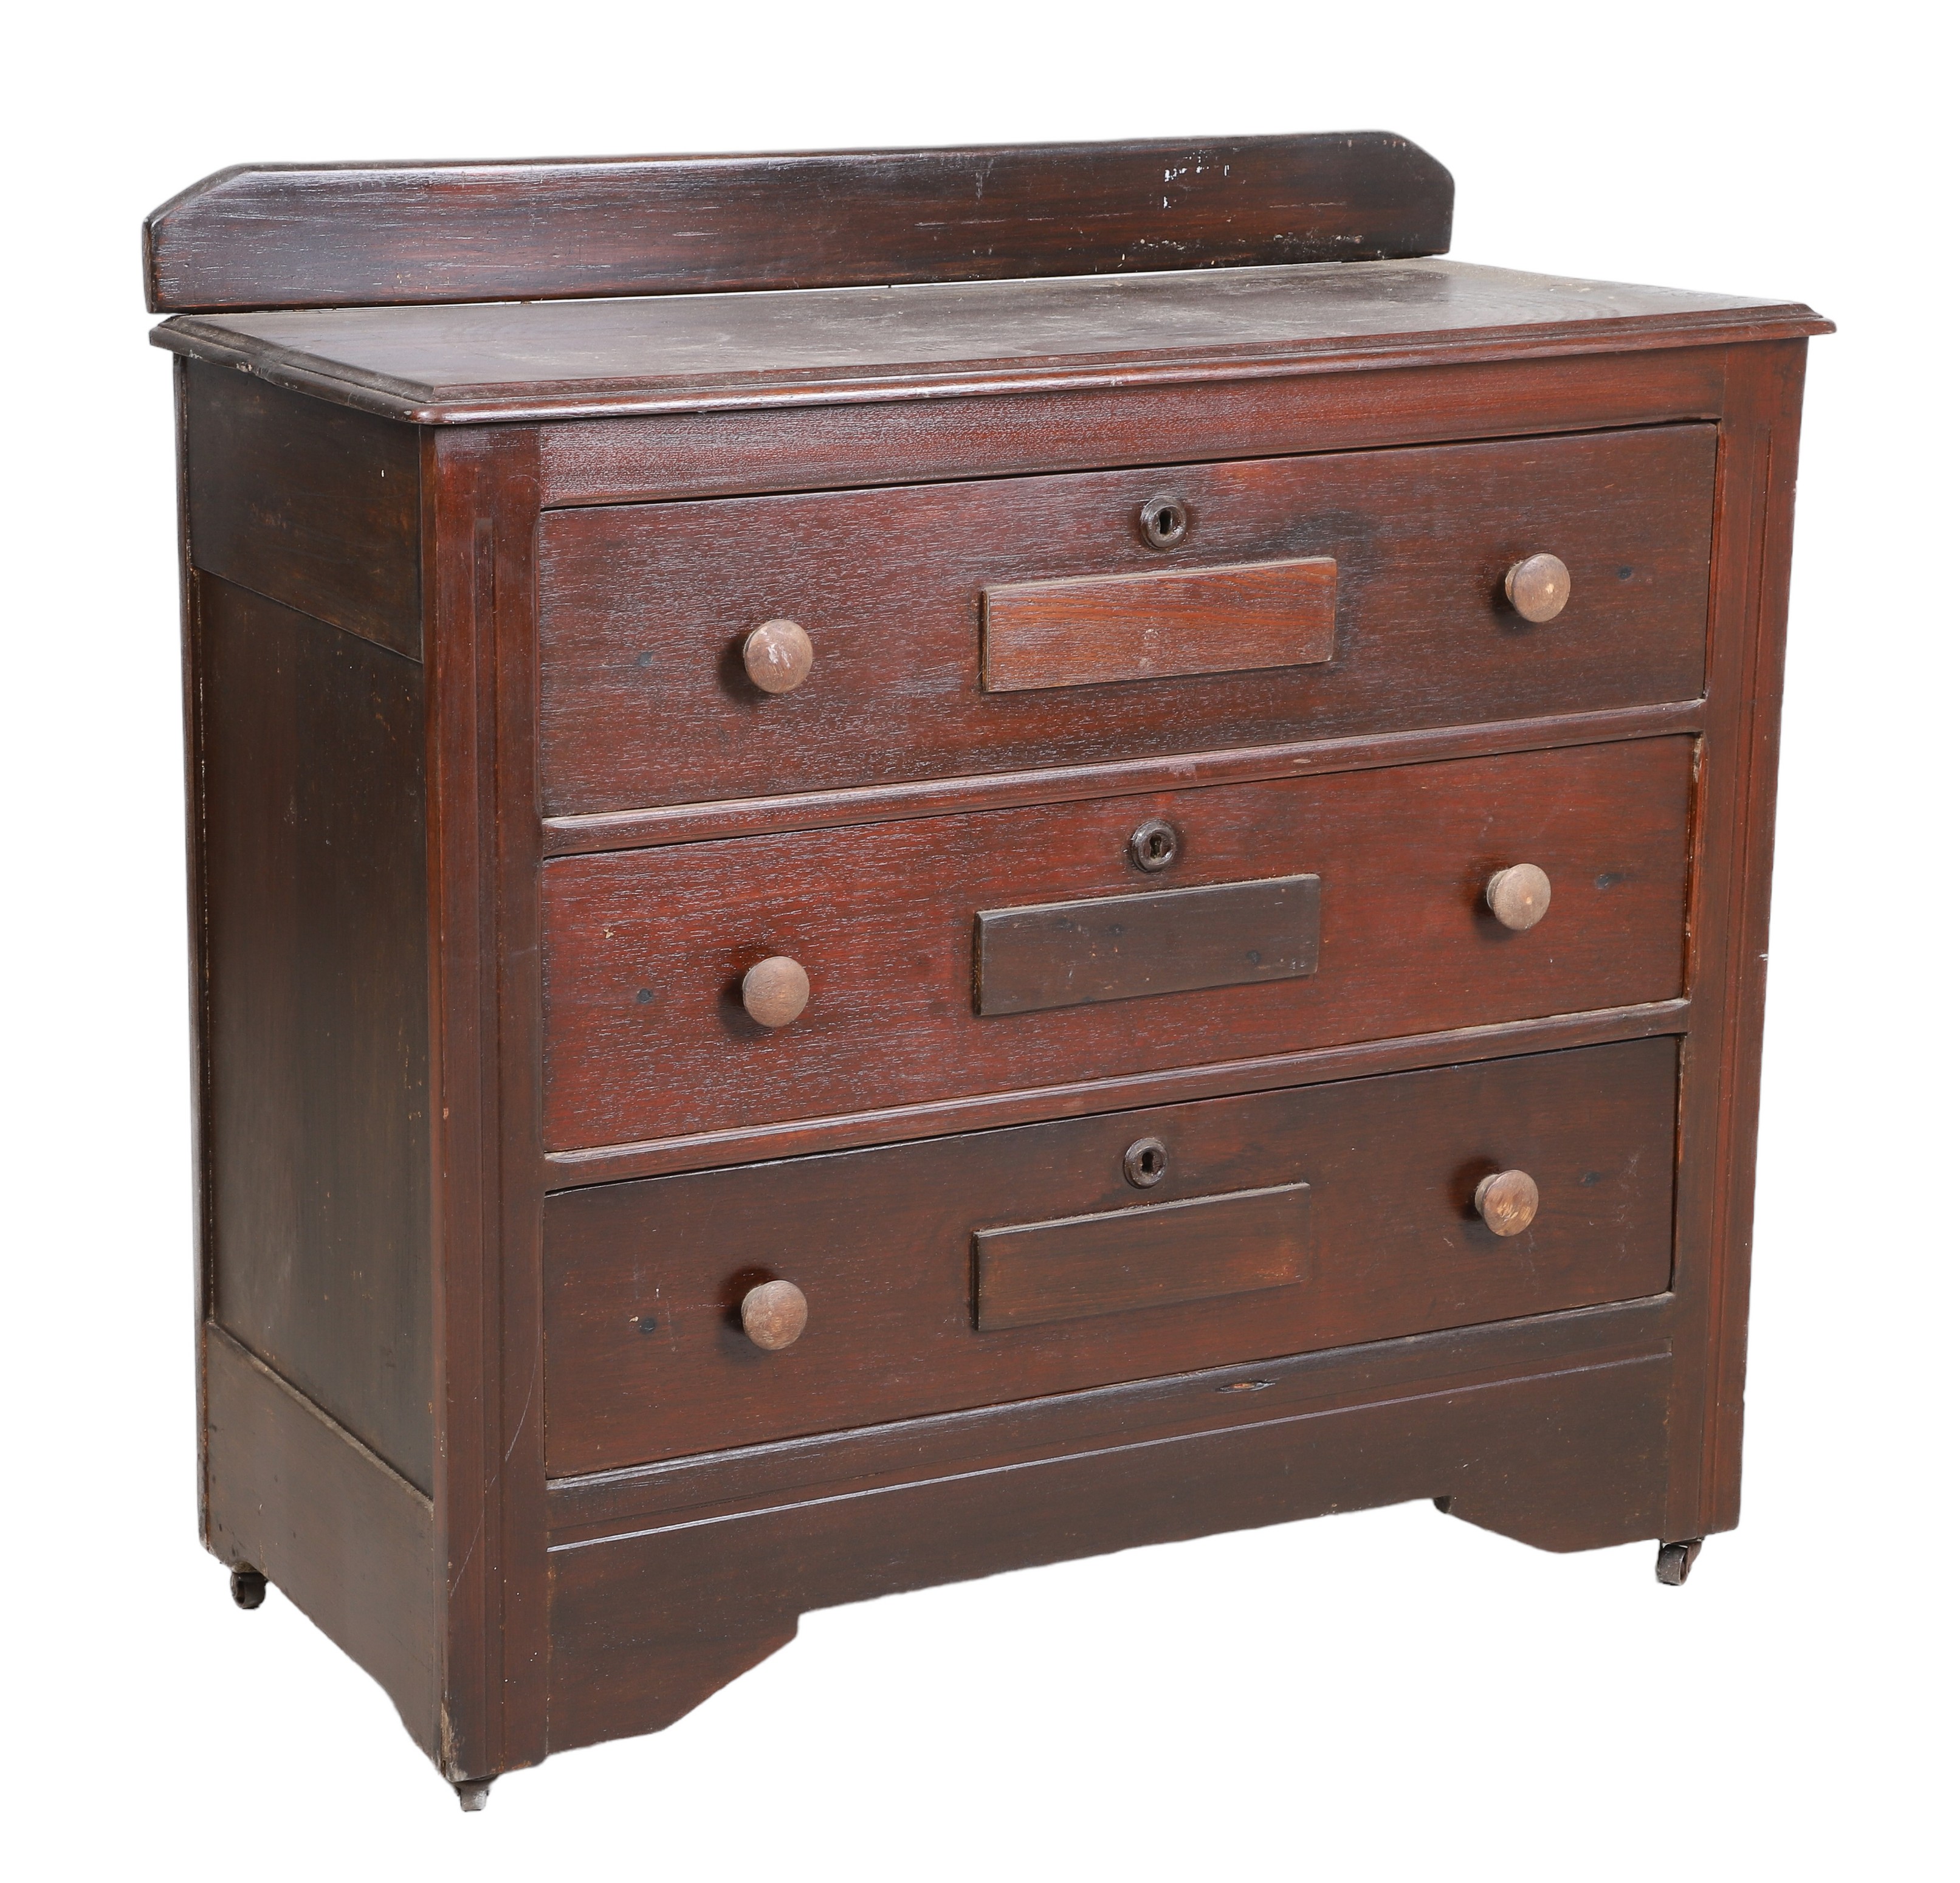 Mahogany chest of drawers, three